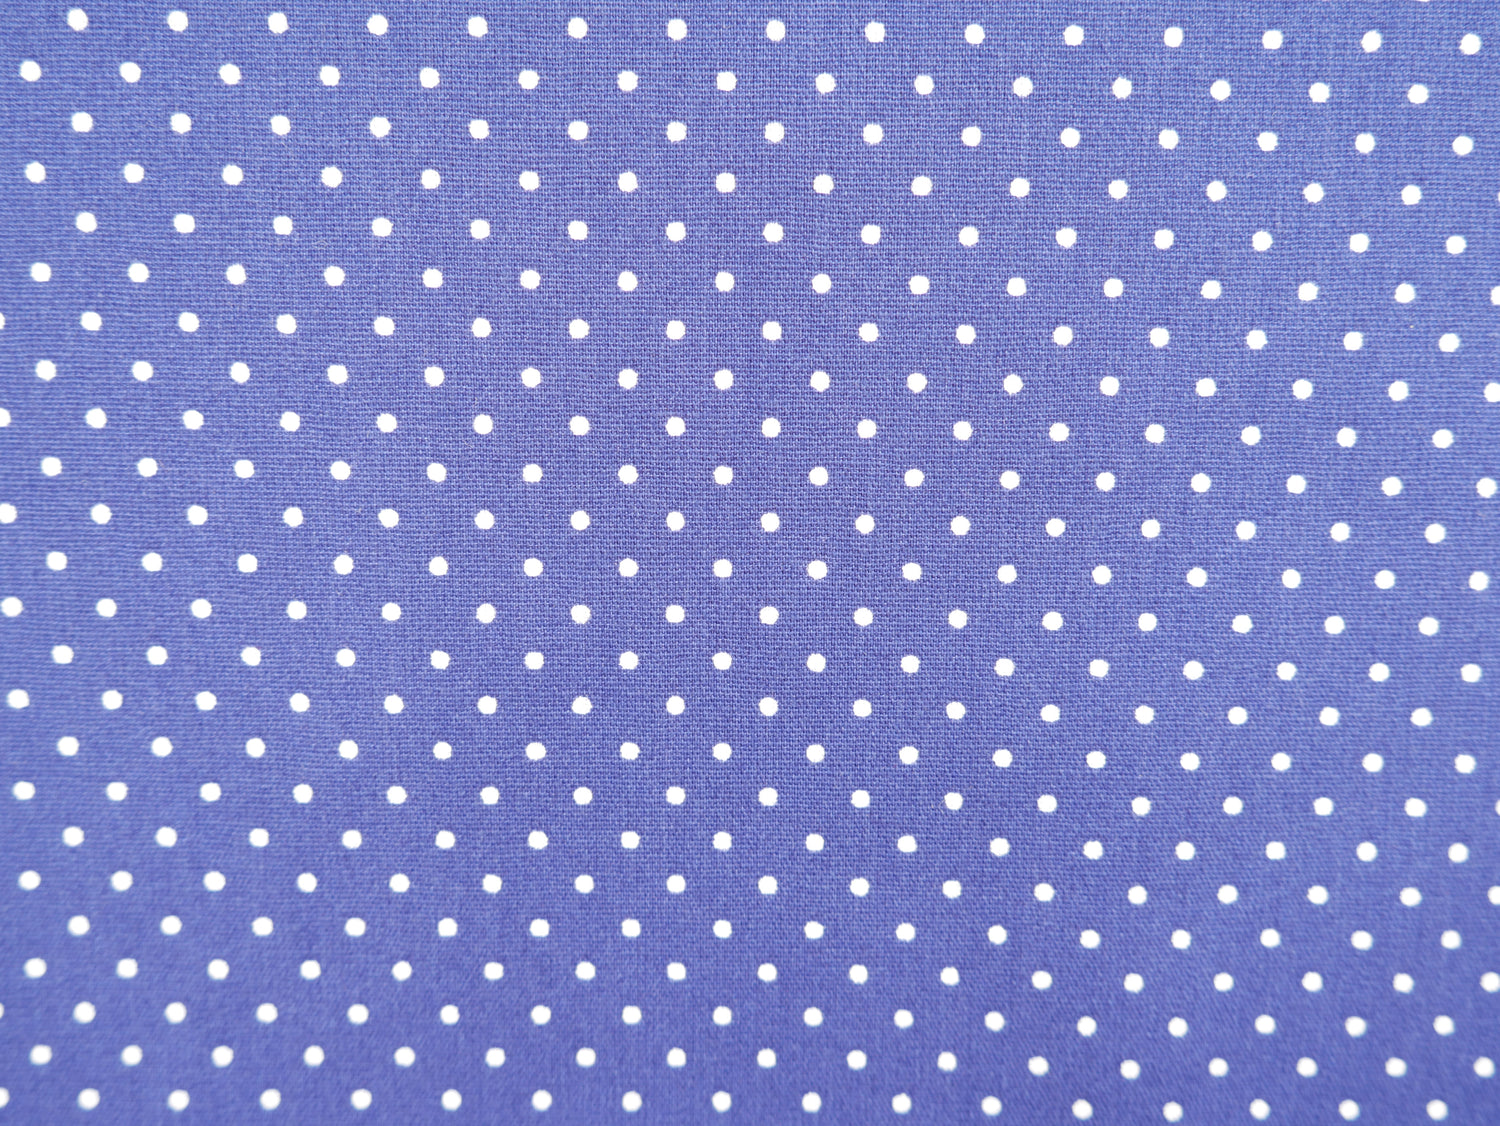 Pin-Spot Printed Cotton, Cobalt £8.50 p/m-Fabric-Flying Bobbins Haberdashery